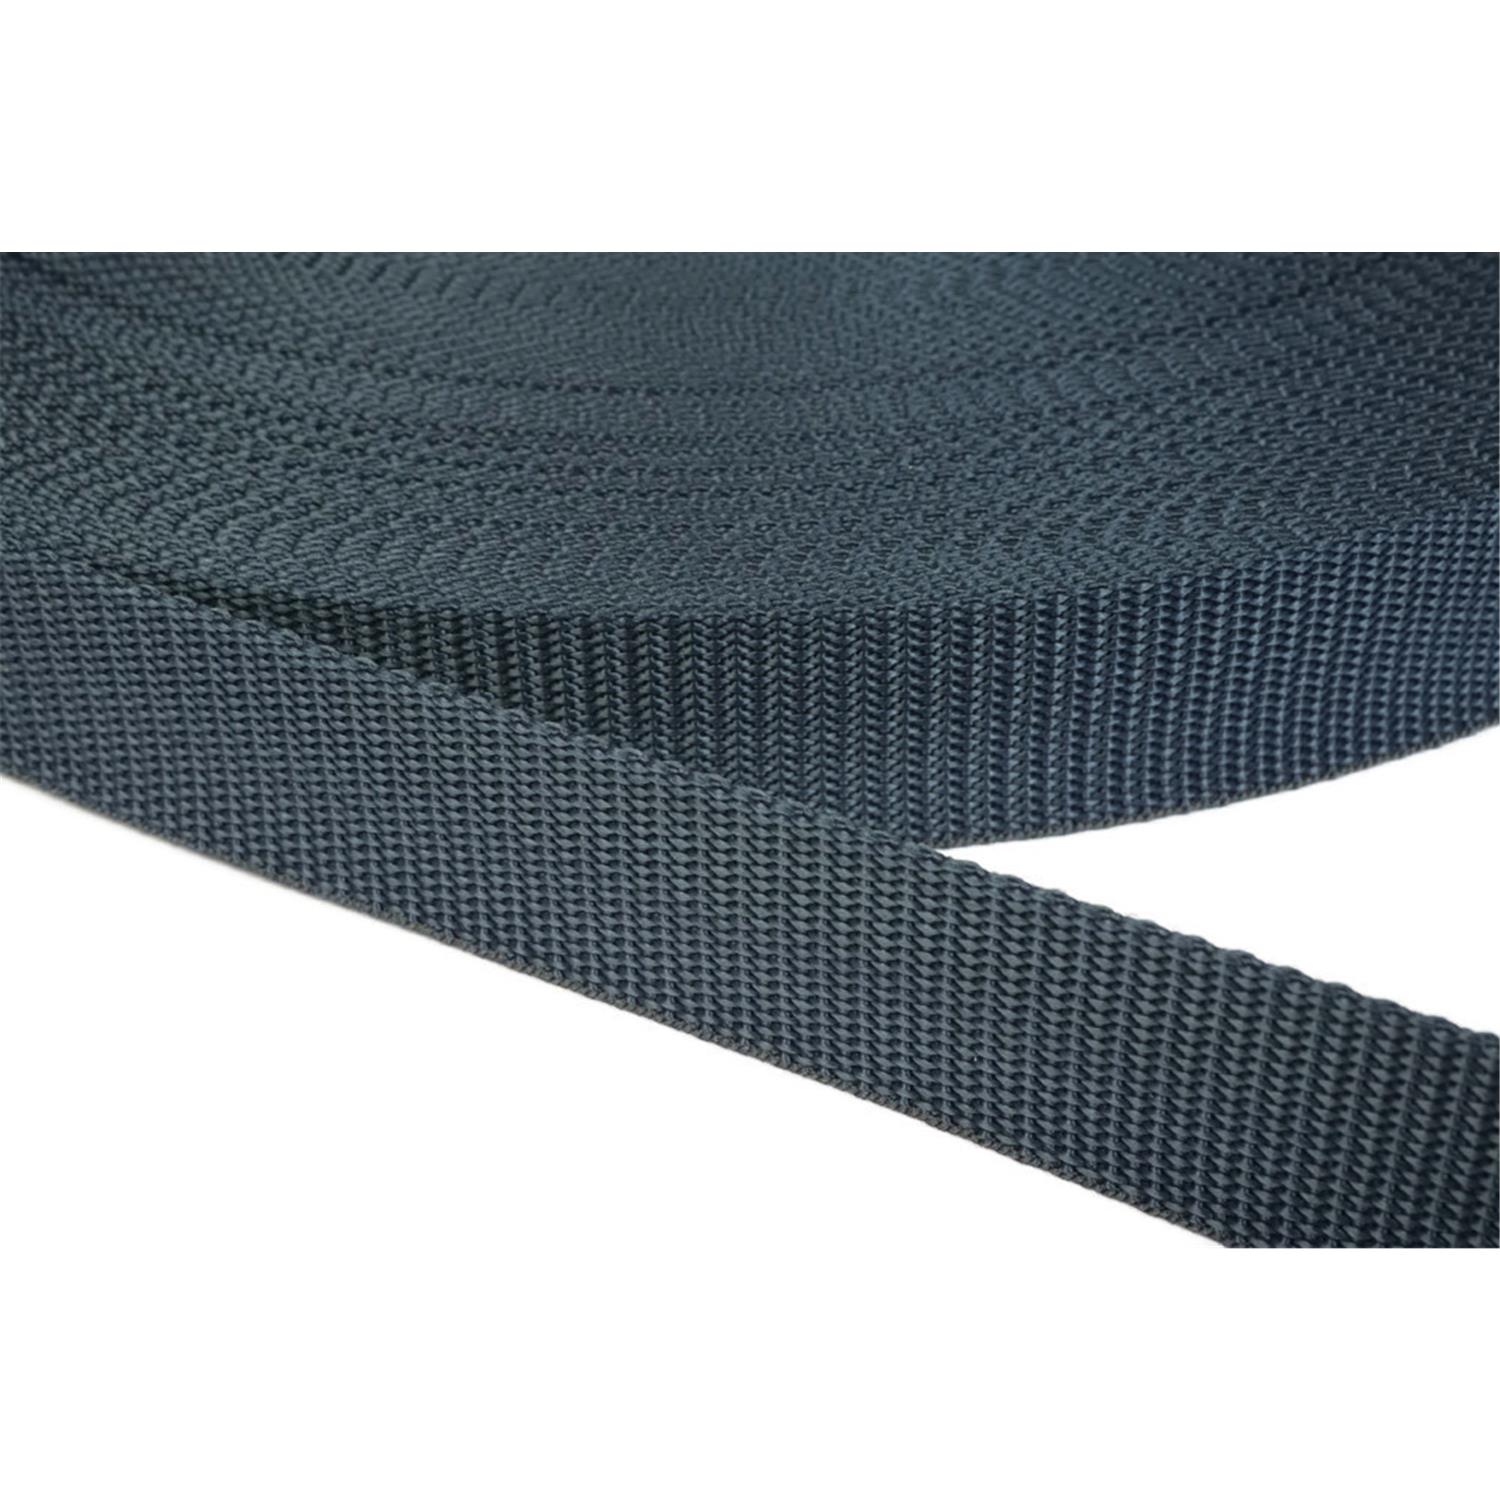 Gurtband 25mm breit aus Polypropylen in 41 Farben 40 - dunkelgrau/blau 12 Meter